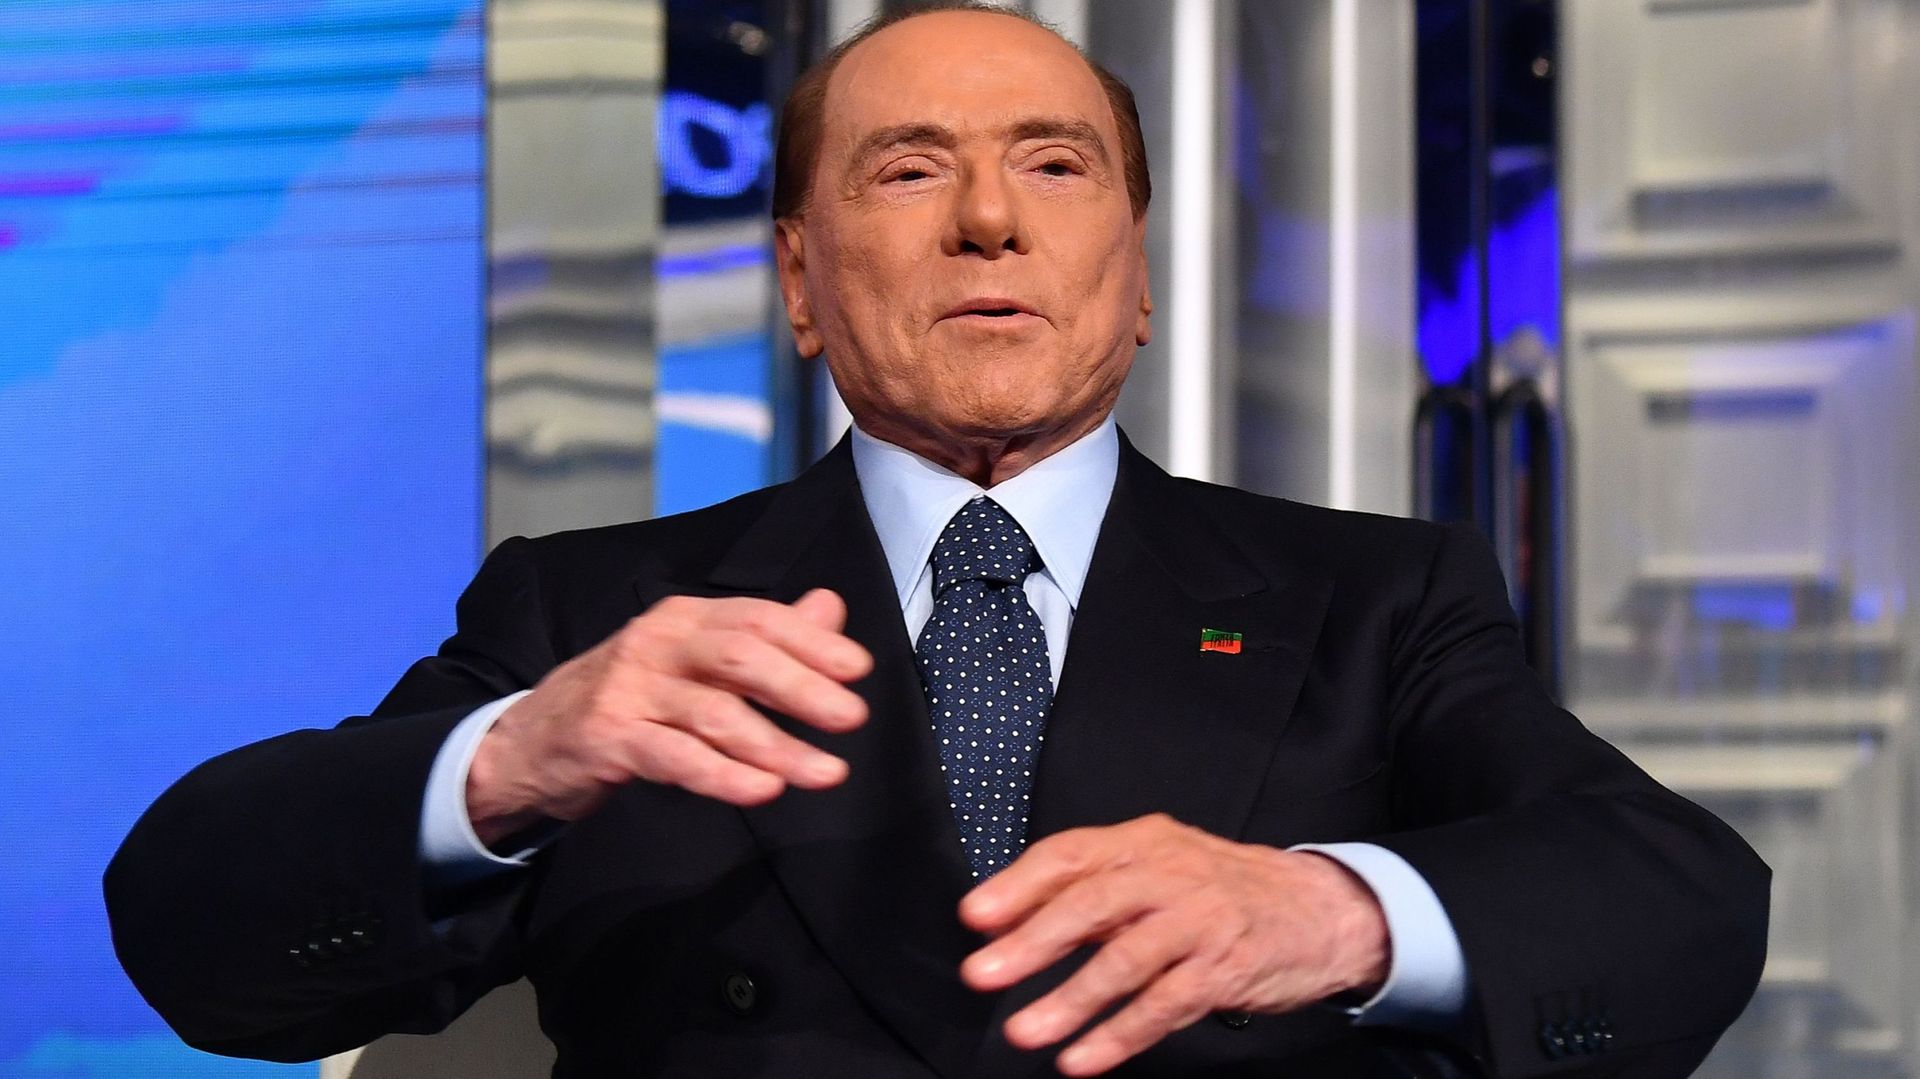 Pour Silvio Berlusconi, il est "naturel que les femmes soient contentes" d'être courtisées